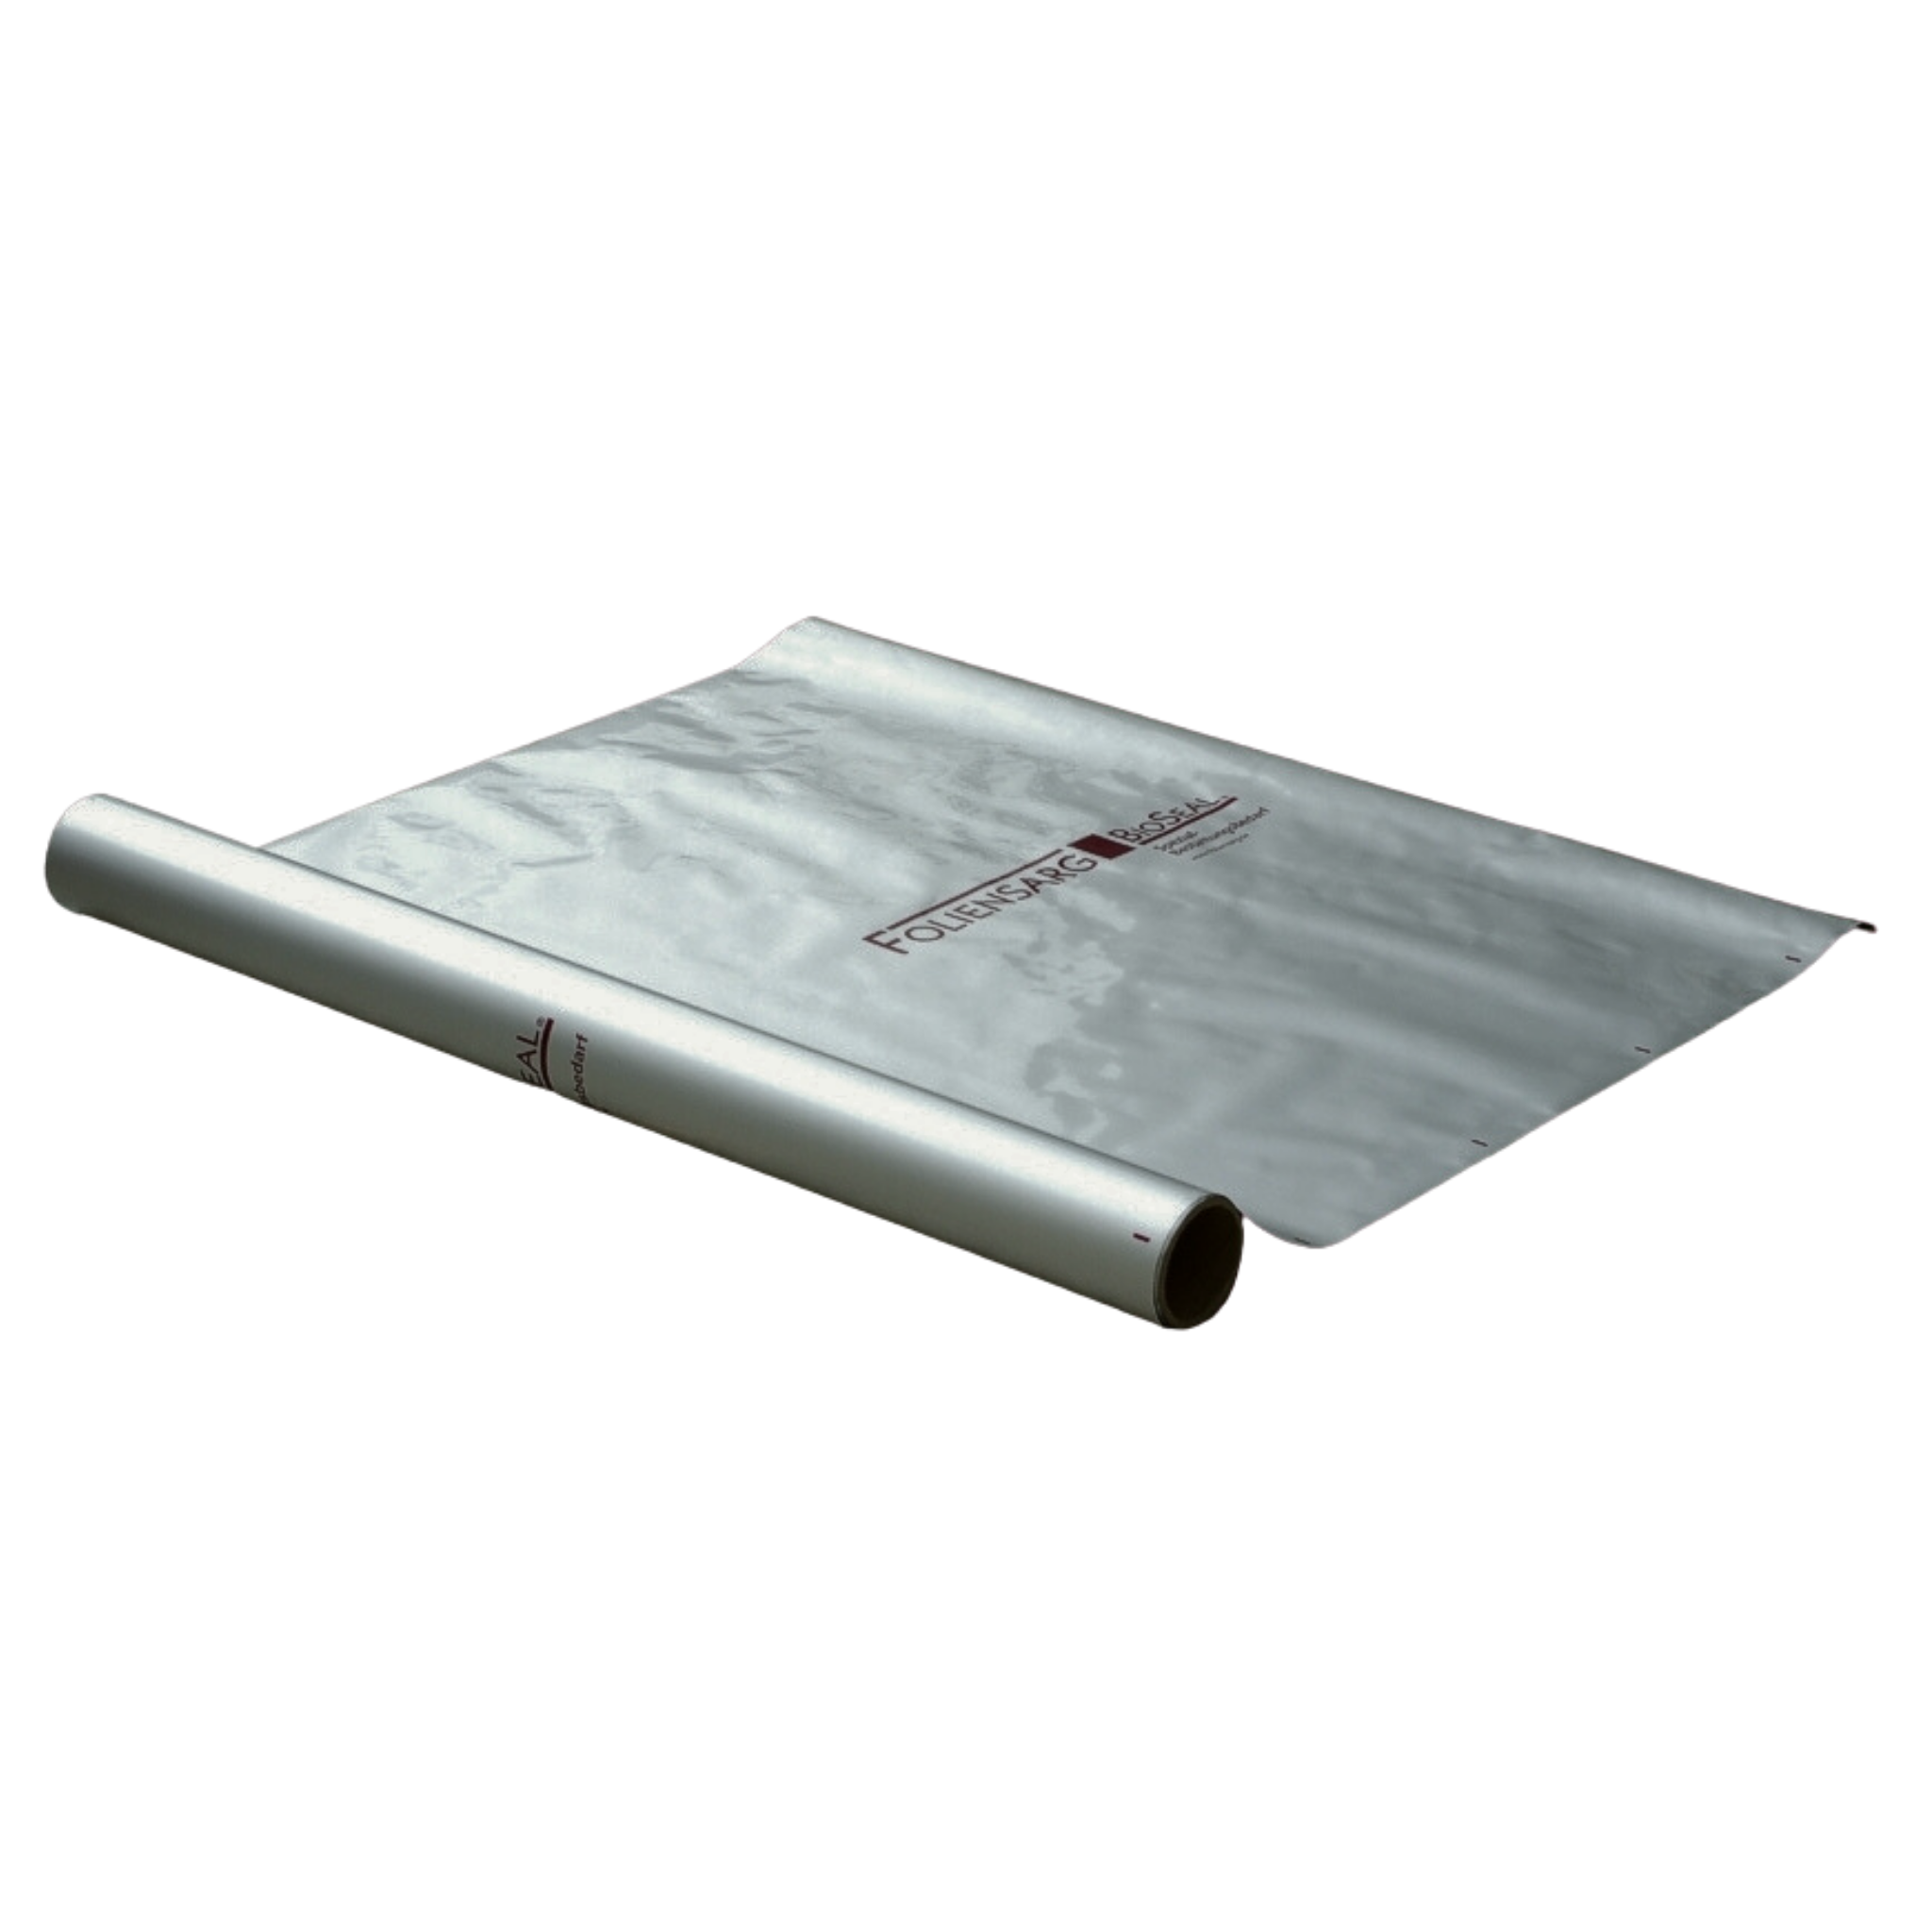 VKF foil coffin BioSeal coffin foil alternative to zinc coffin